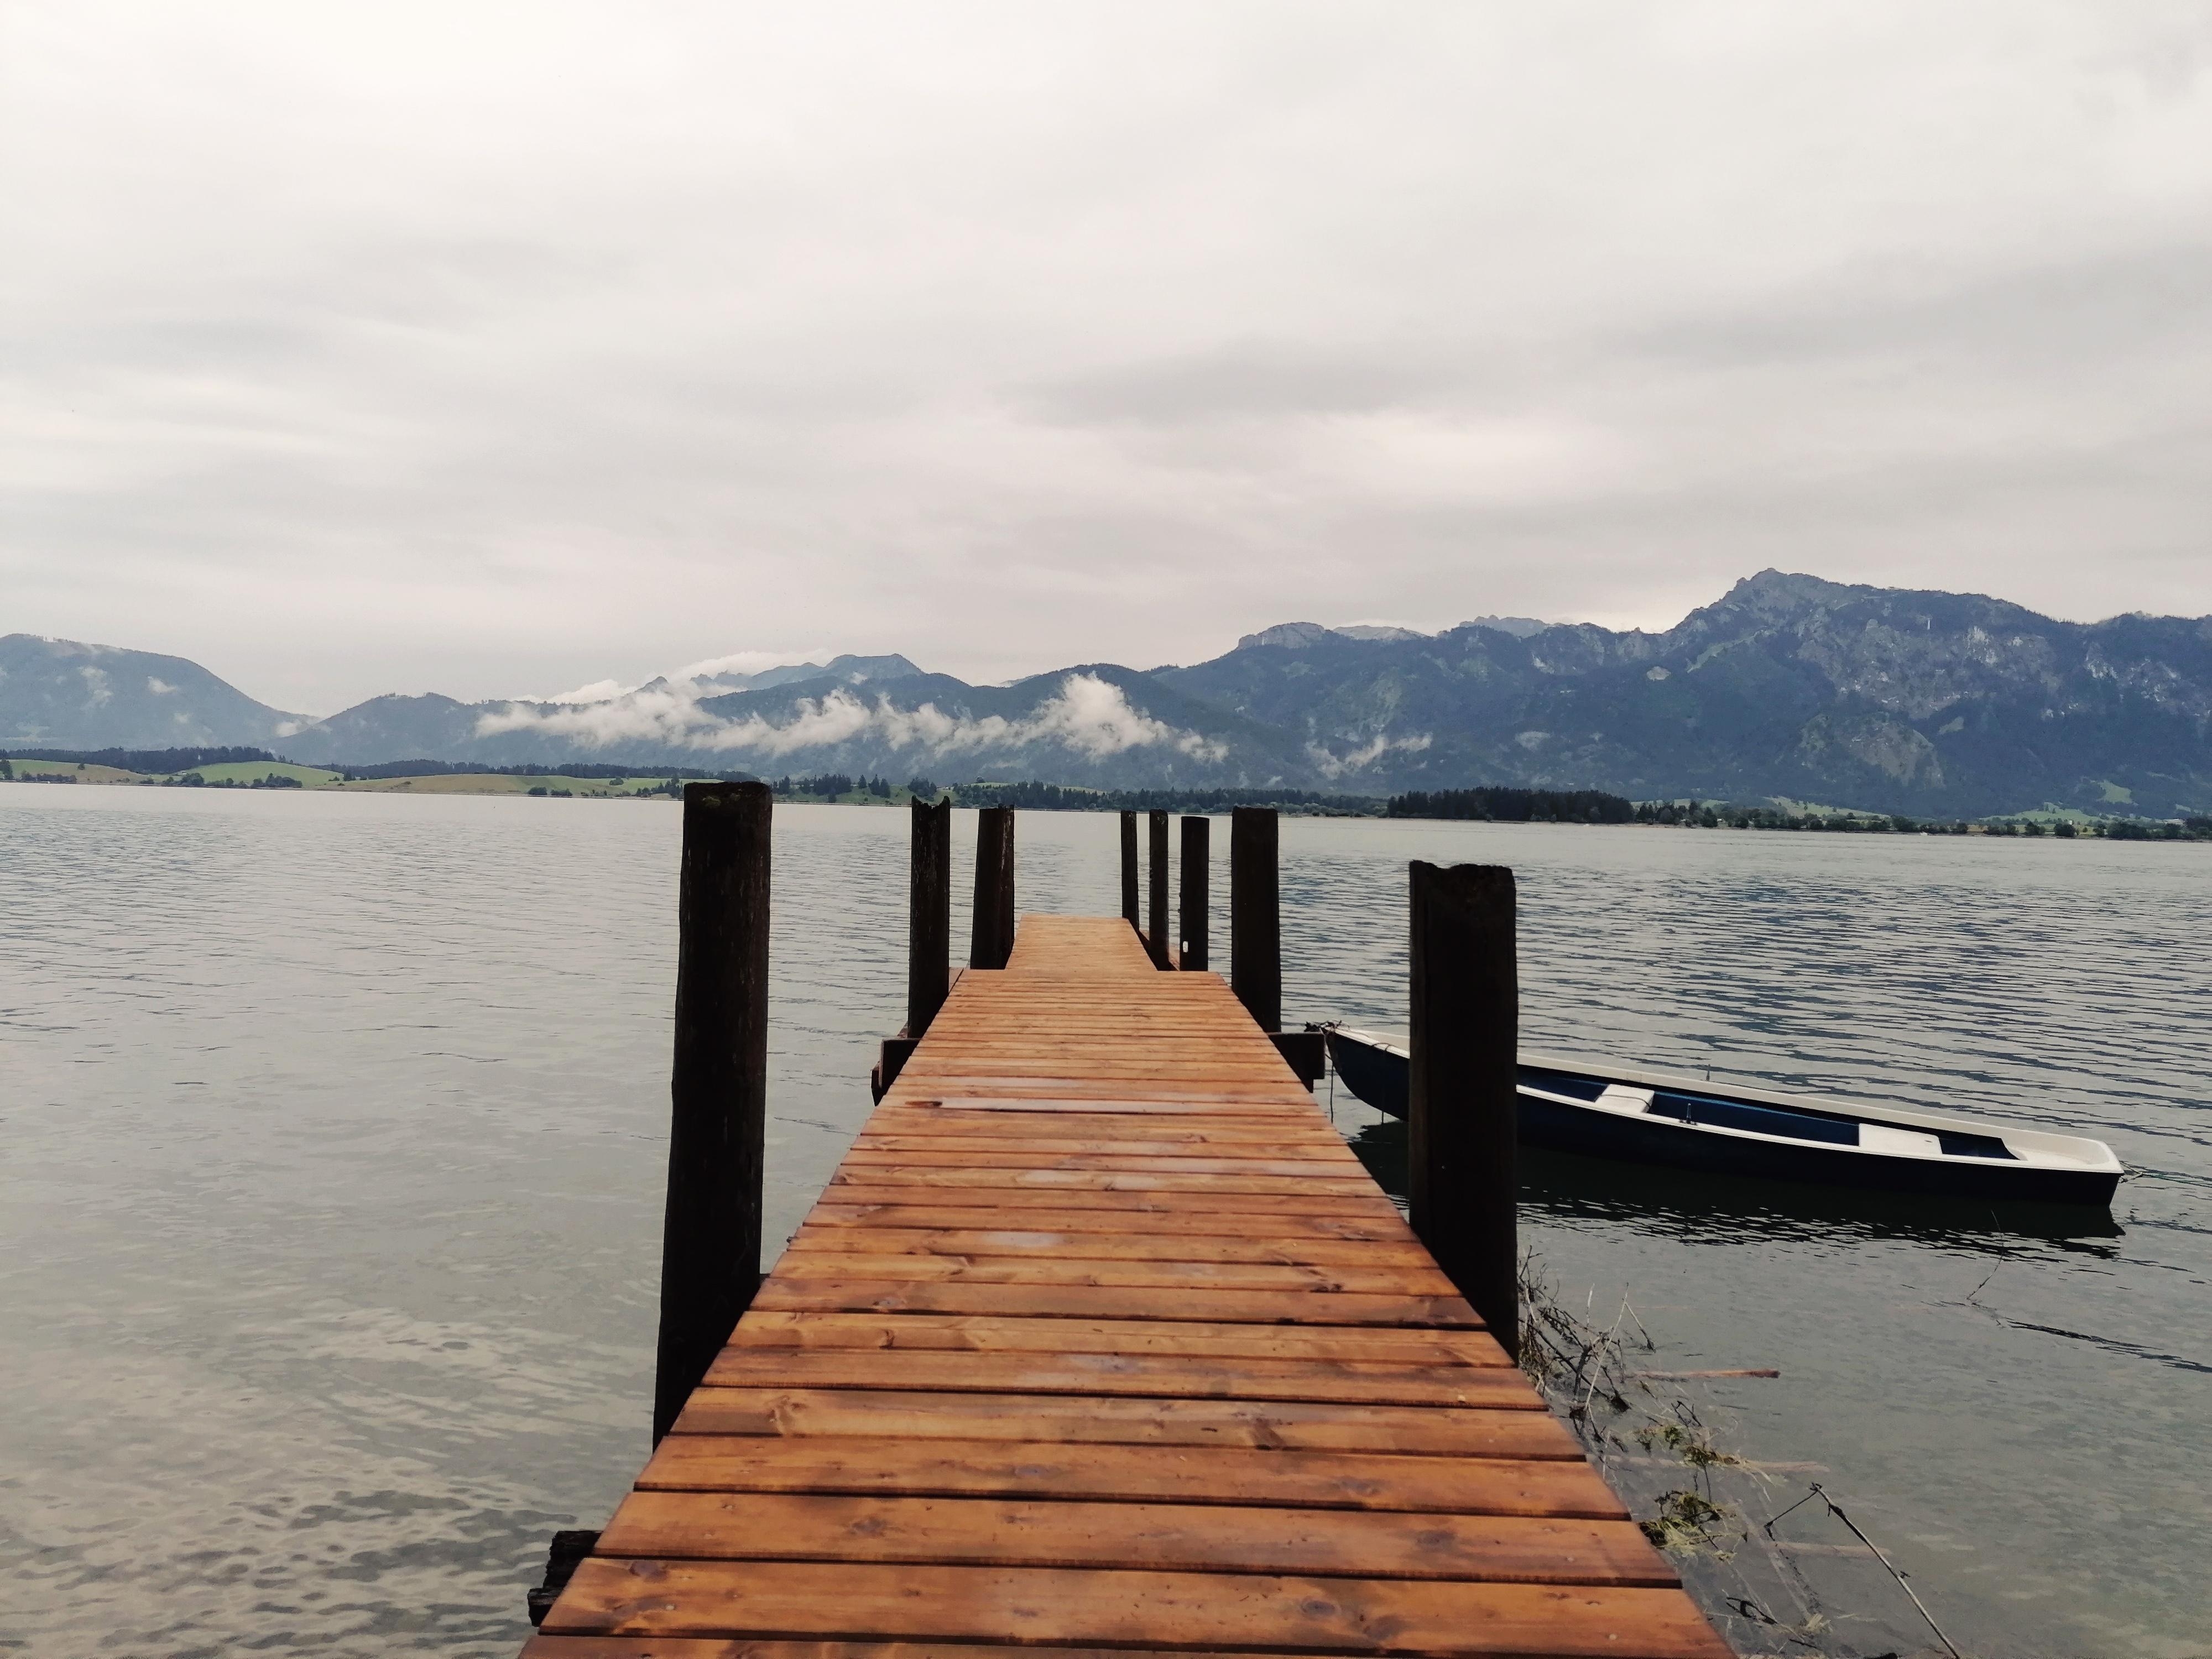 Einfach mal ausspannen #Forggensee #UrlaubinDeutschland #BergeundSee